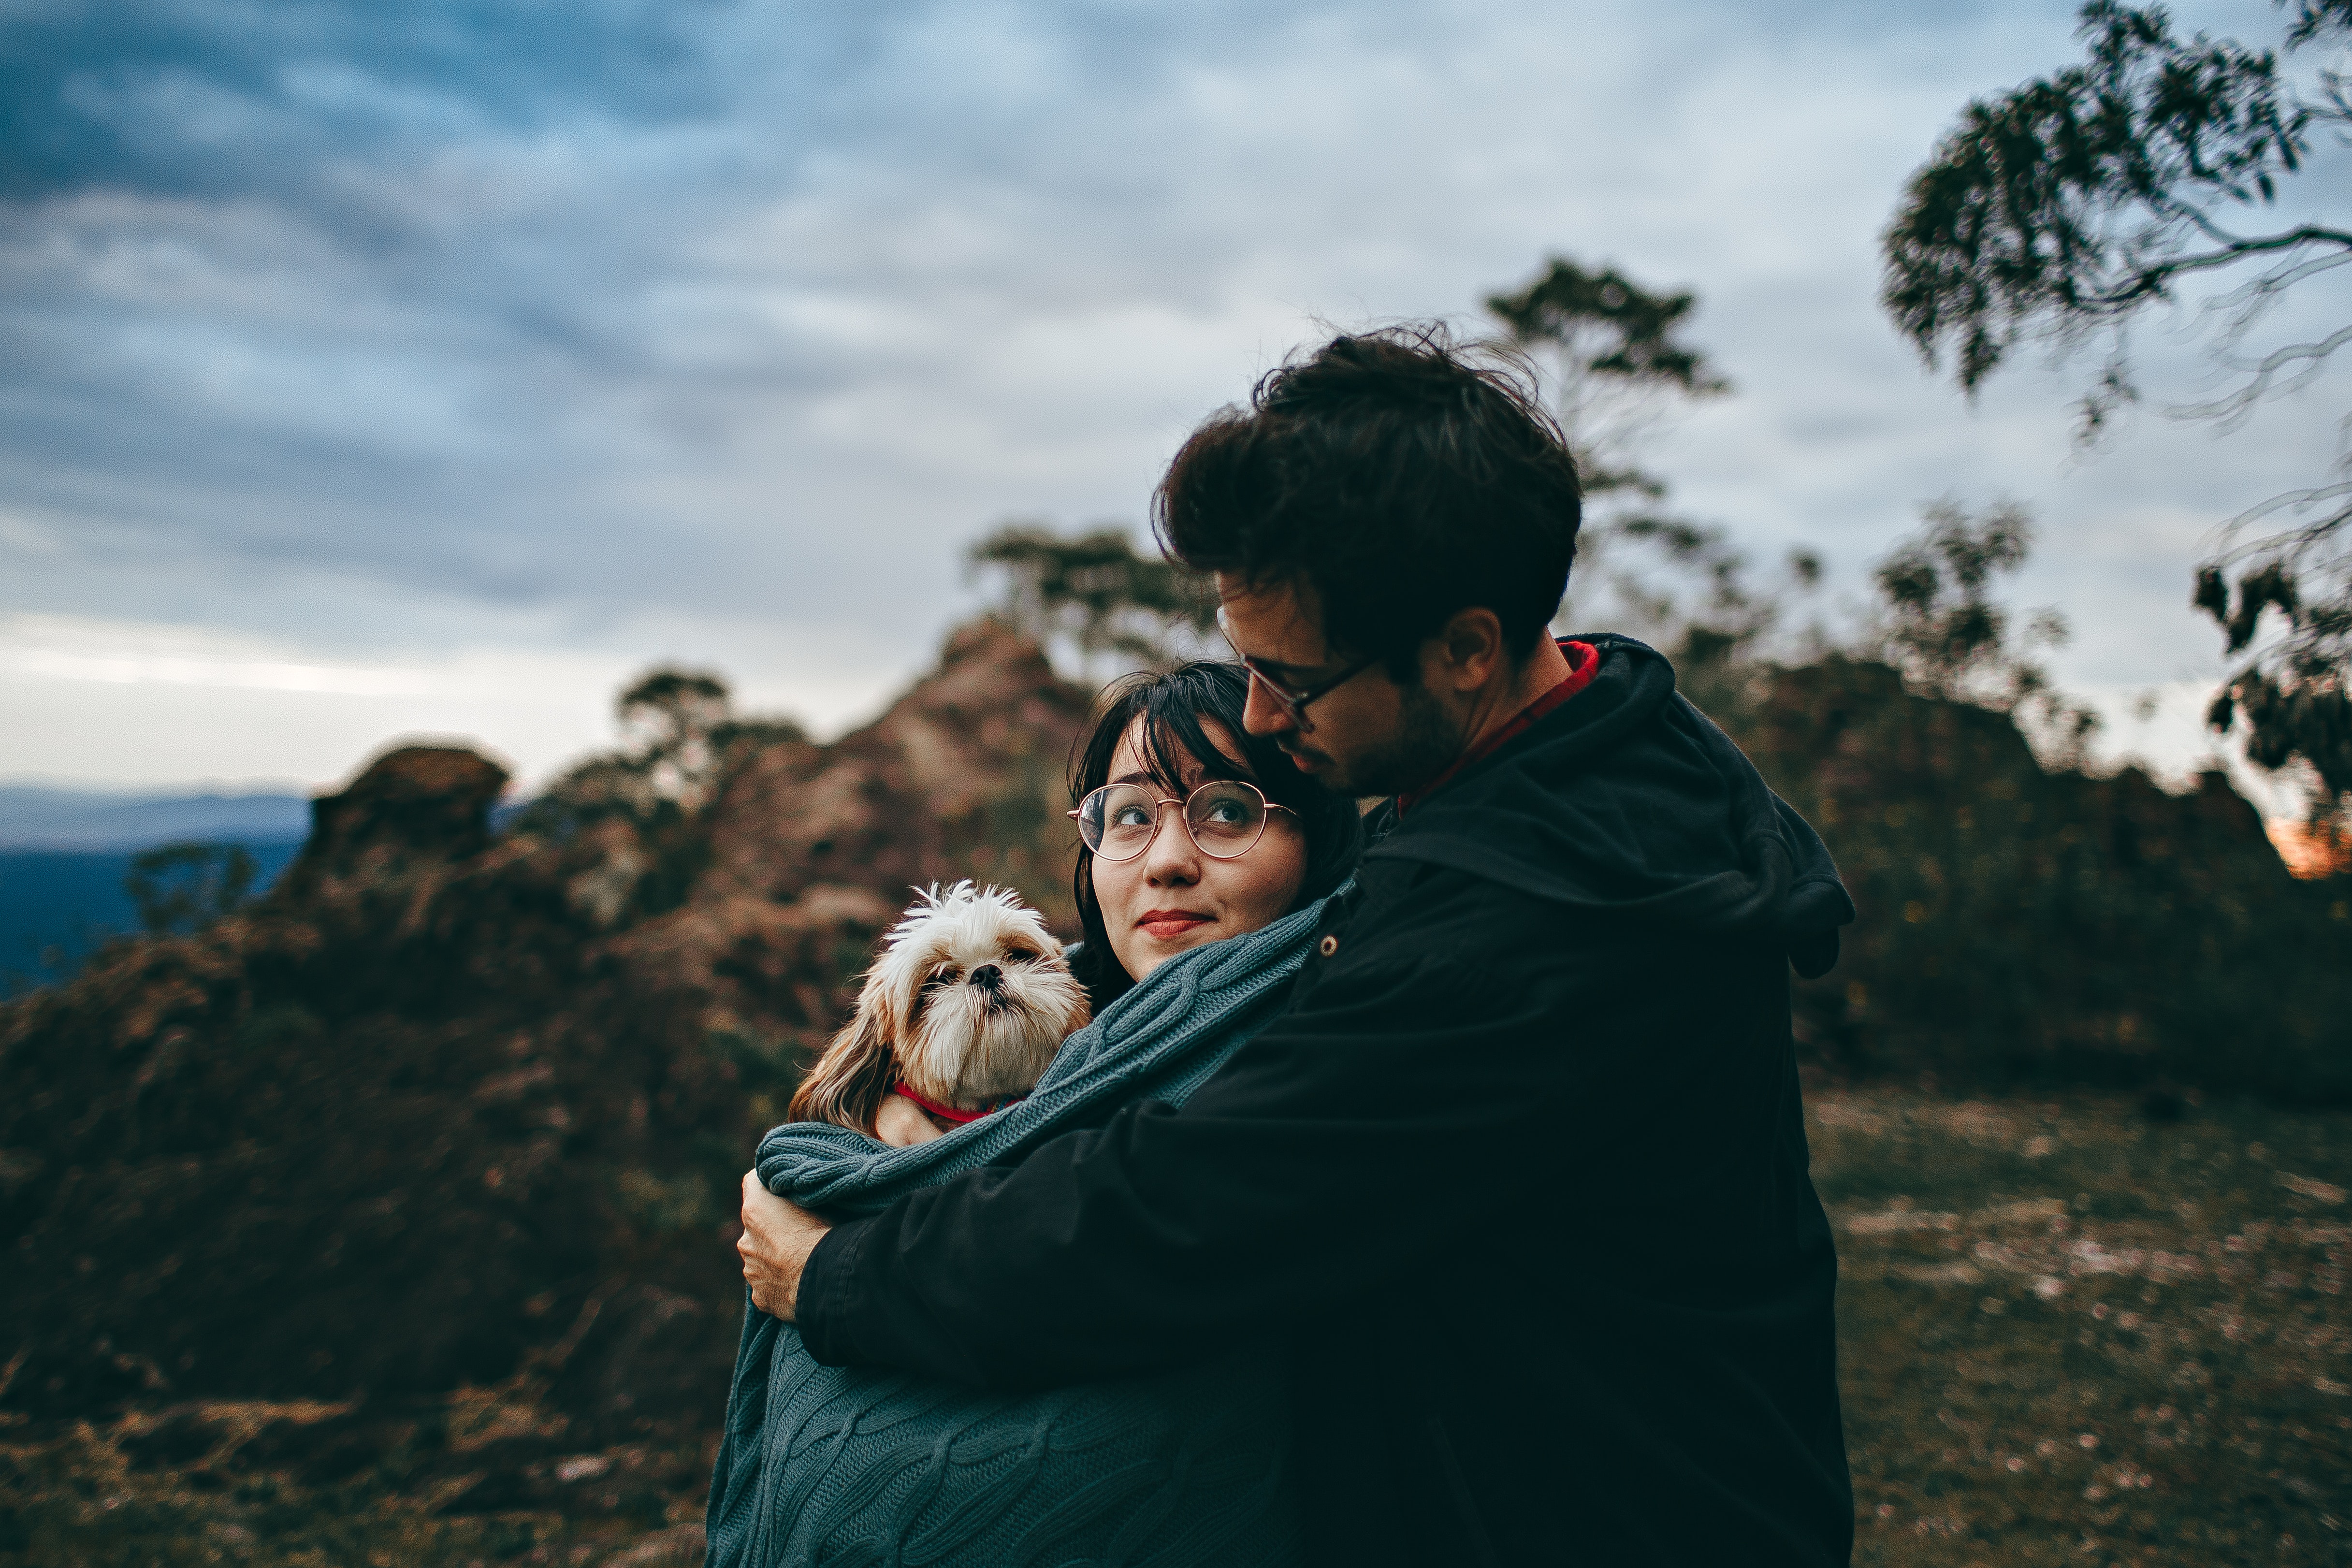 En los últimos años, los perros son considerados un miembro más de la familia, incluso como un hijo. (Foto Prensa Libre: Helena Lopes en https://www.pexels.com/es-es/foto/pareja-abrazar-adulto-bronceado-y-blanco-shih-tzu-2055235/).